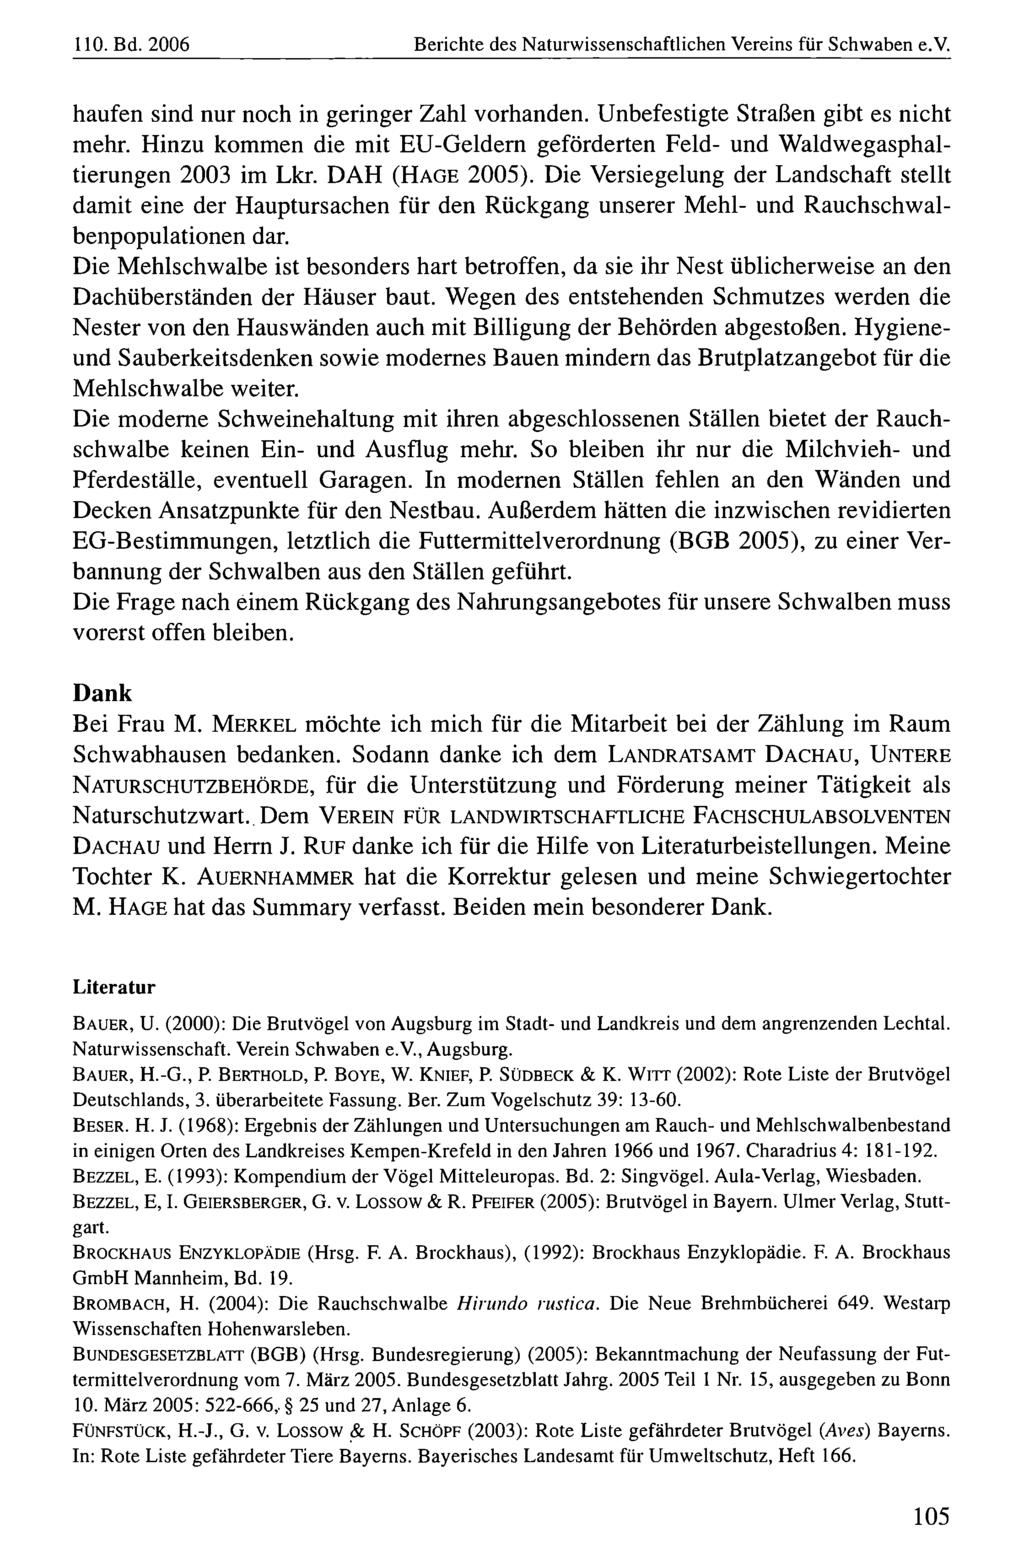 110. Bd. 2006 Naturwissenschaftlicher Verein Berichte für Schwaben, des Naturwissenschaftlichen download unter www.biologiezentrum.at Vereins für Schwaben e.v.